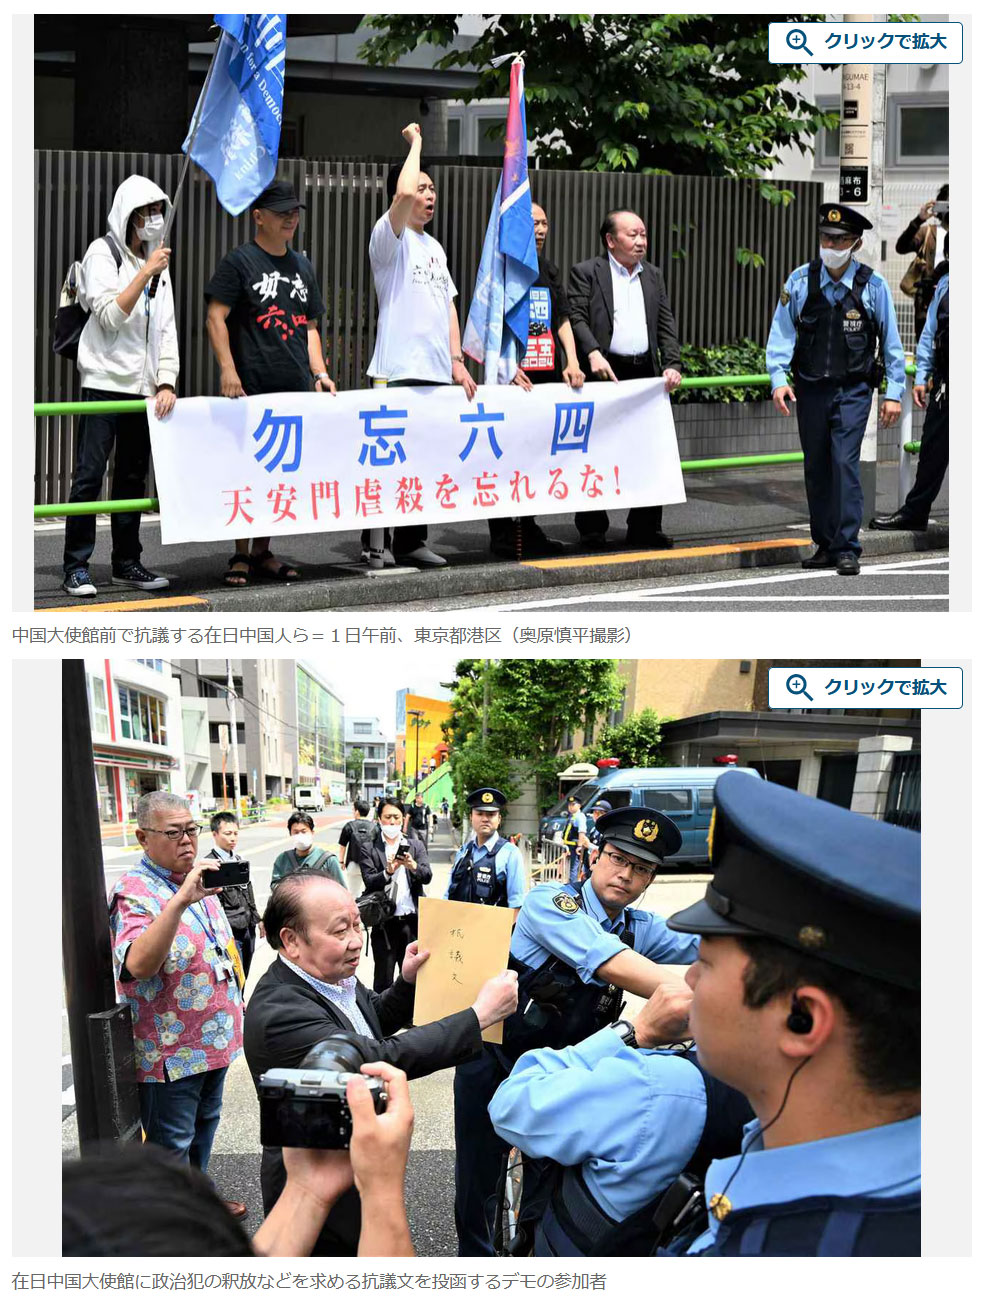 天安門事件から３５年　中国大使館前で抗議デモ　在日中国人ら「民主化実現まで頑張る」 – 産経ニュース